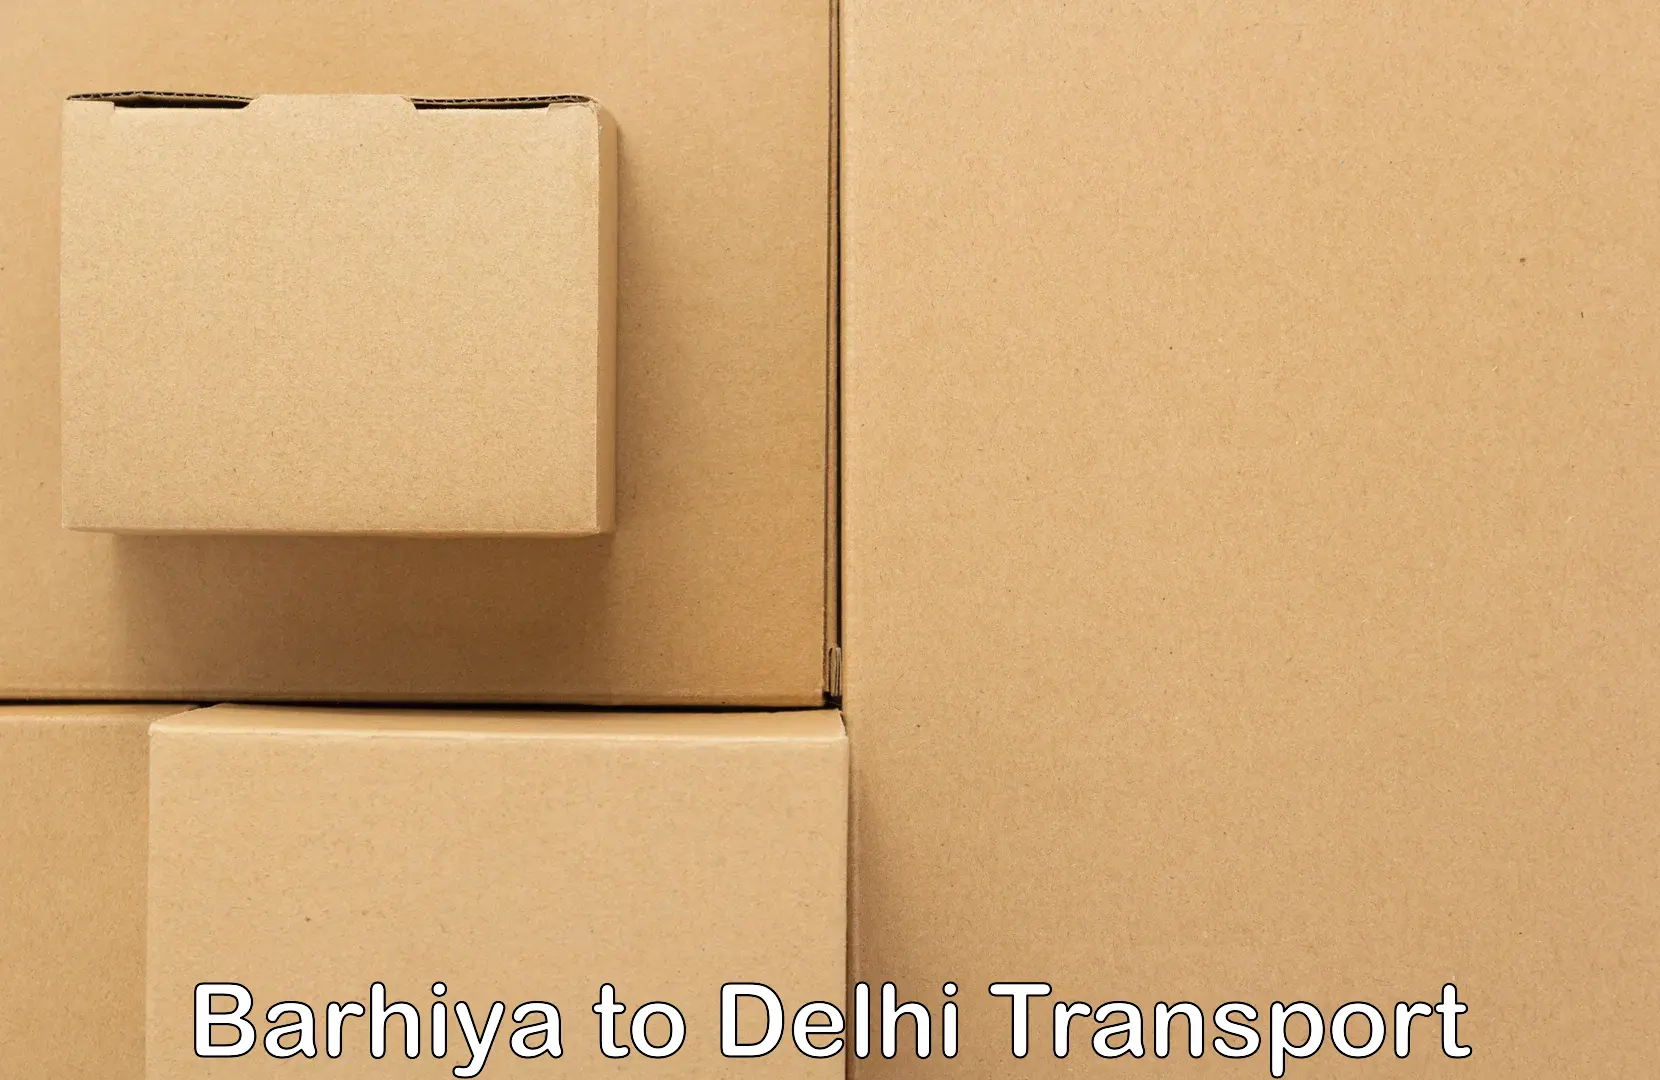 Daily transport service Barhiya to University of Delhi